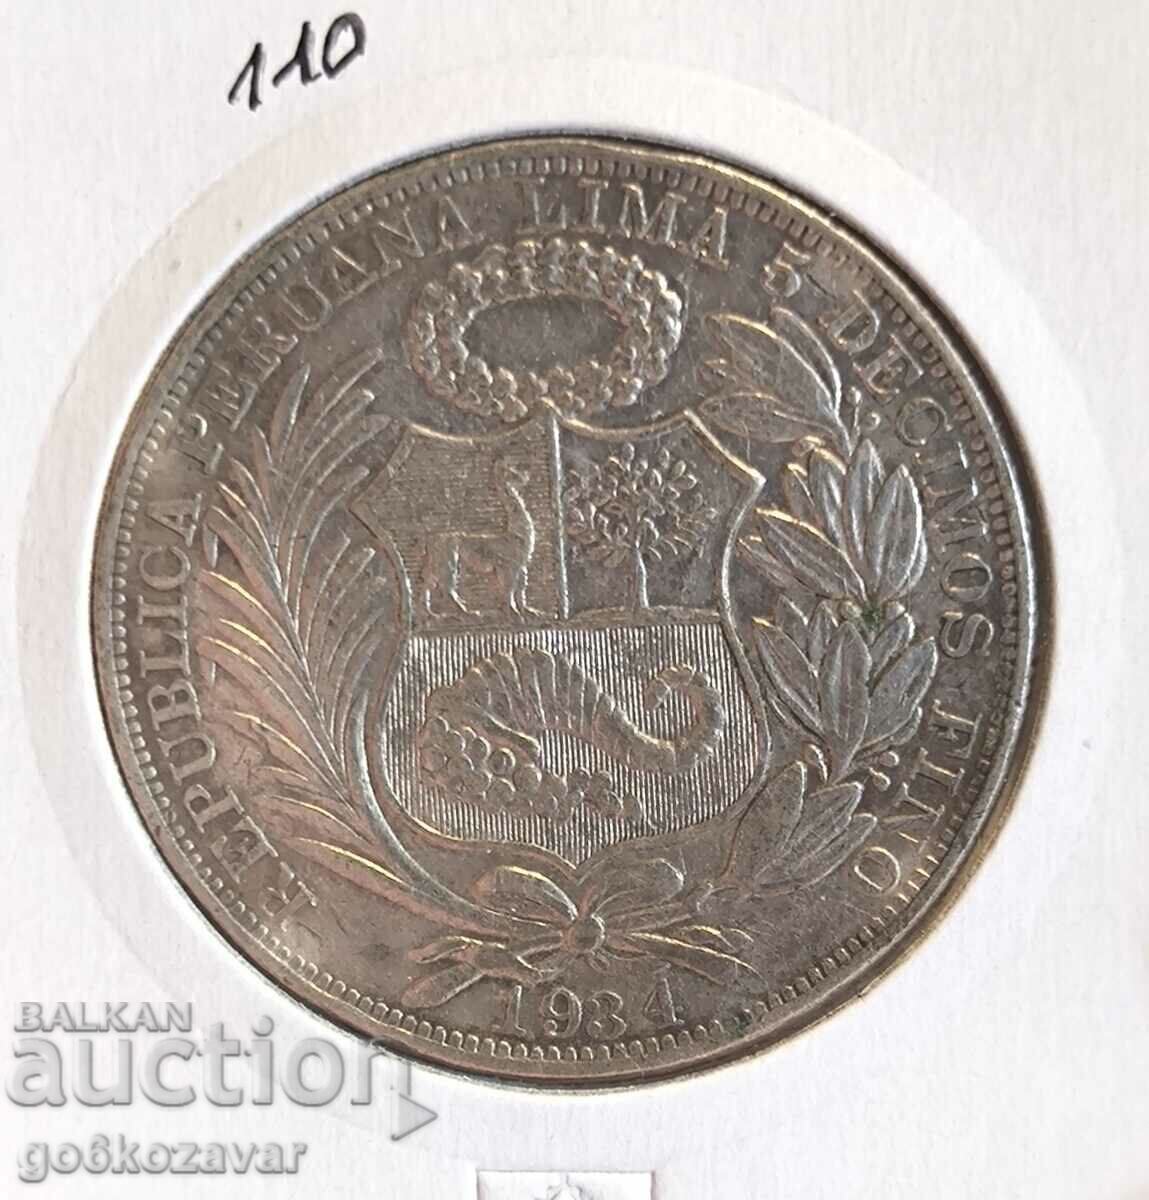 Peru 1 Sol 1934 Silver!